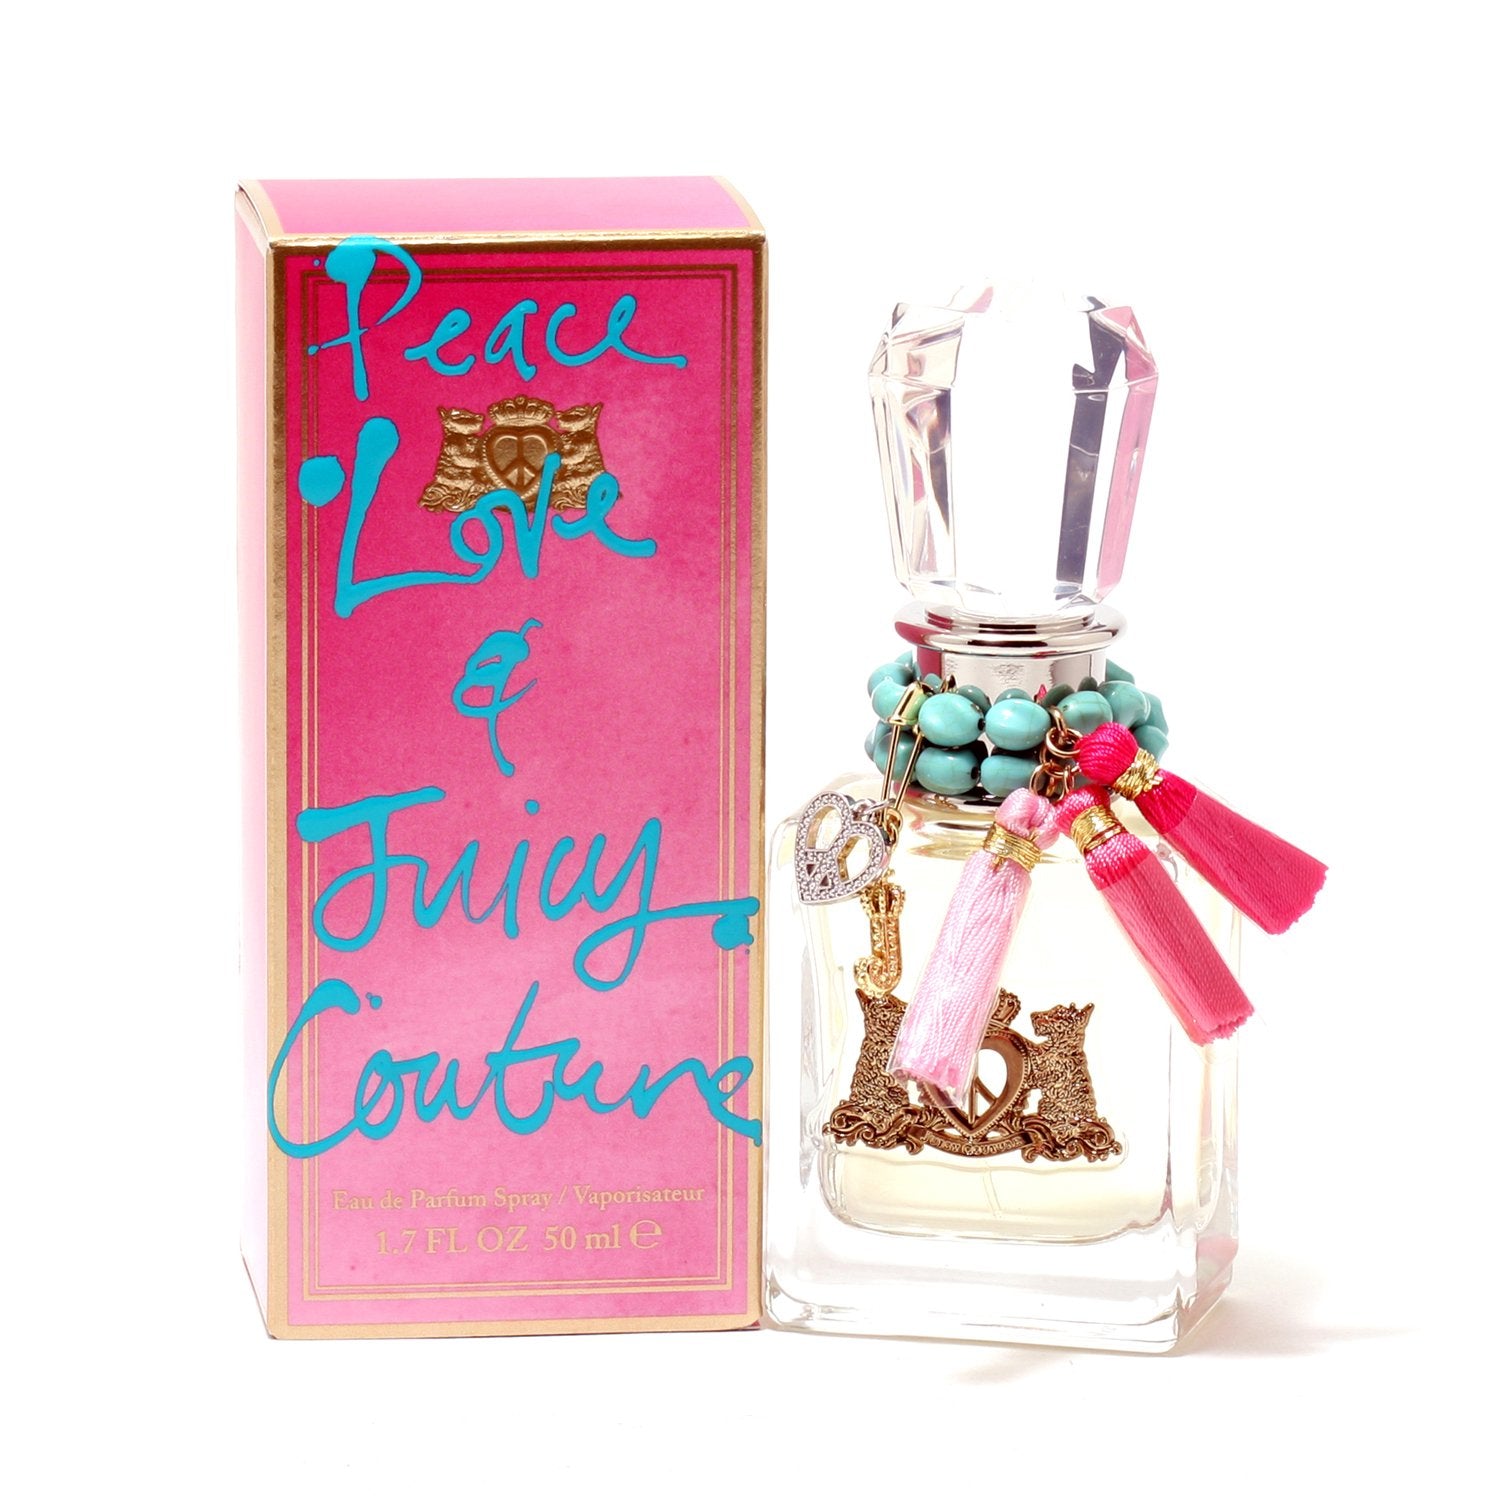 Perfume - JUICY COUTURE PEACE LOVE & JUICY COUTURE FOR WOMEN - EAU DE PARFUM SPRAY